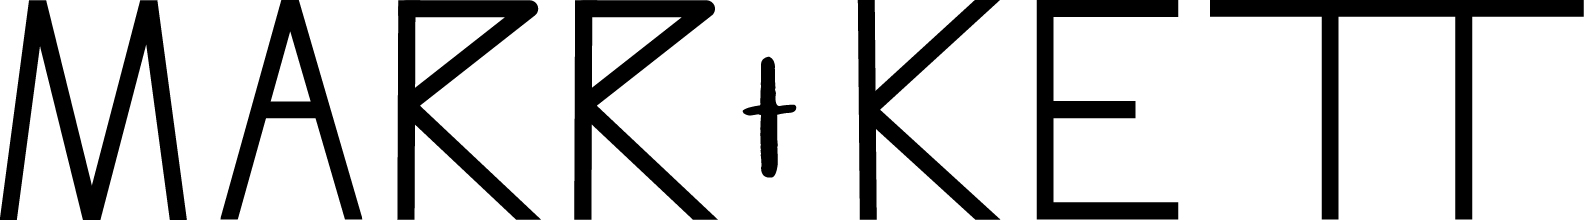 Marr-ket-logo